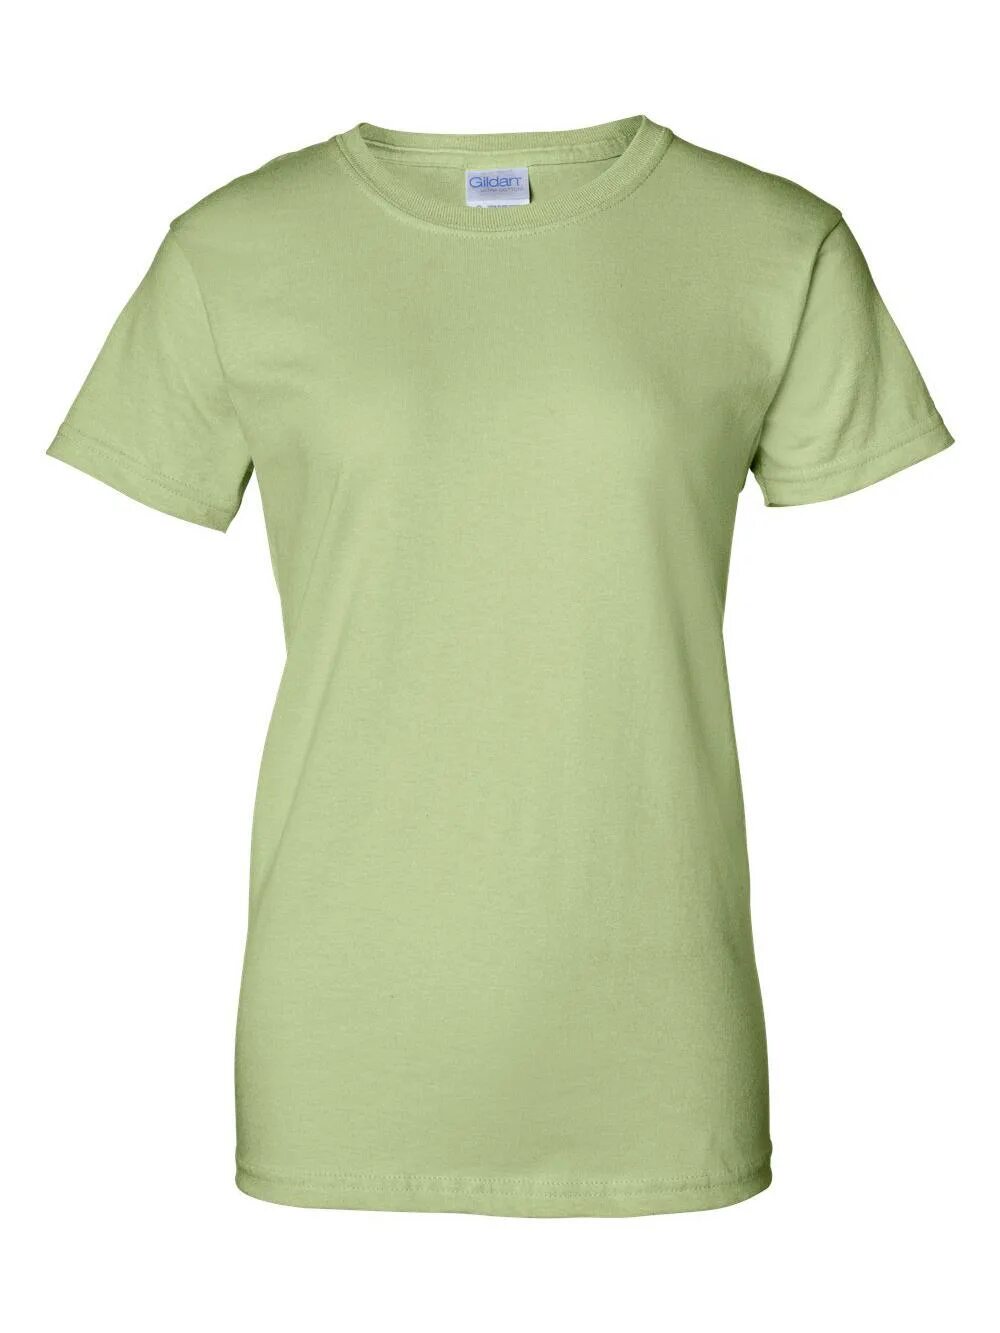 Gildan футболки женские. Gildan Ultra Cotton футболки. Gildan Premium Cotton футболка. Футболки из 2000. Футболка женская хлопок 100